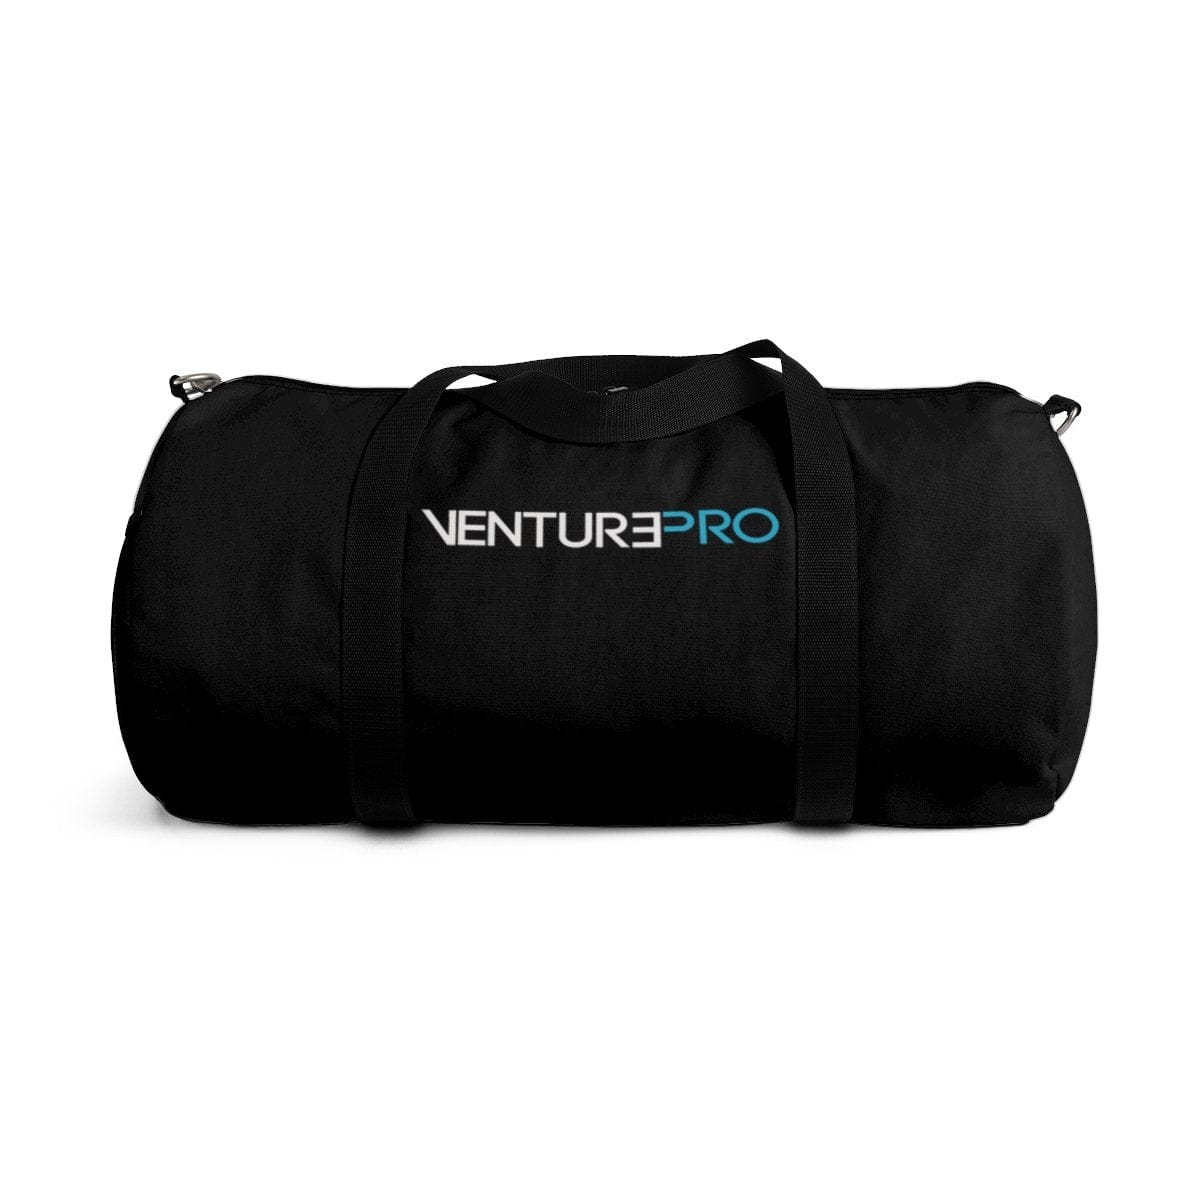 Explorer DNA Venture Pro Duffel Bag